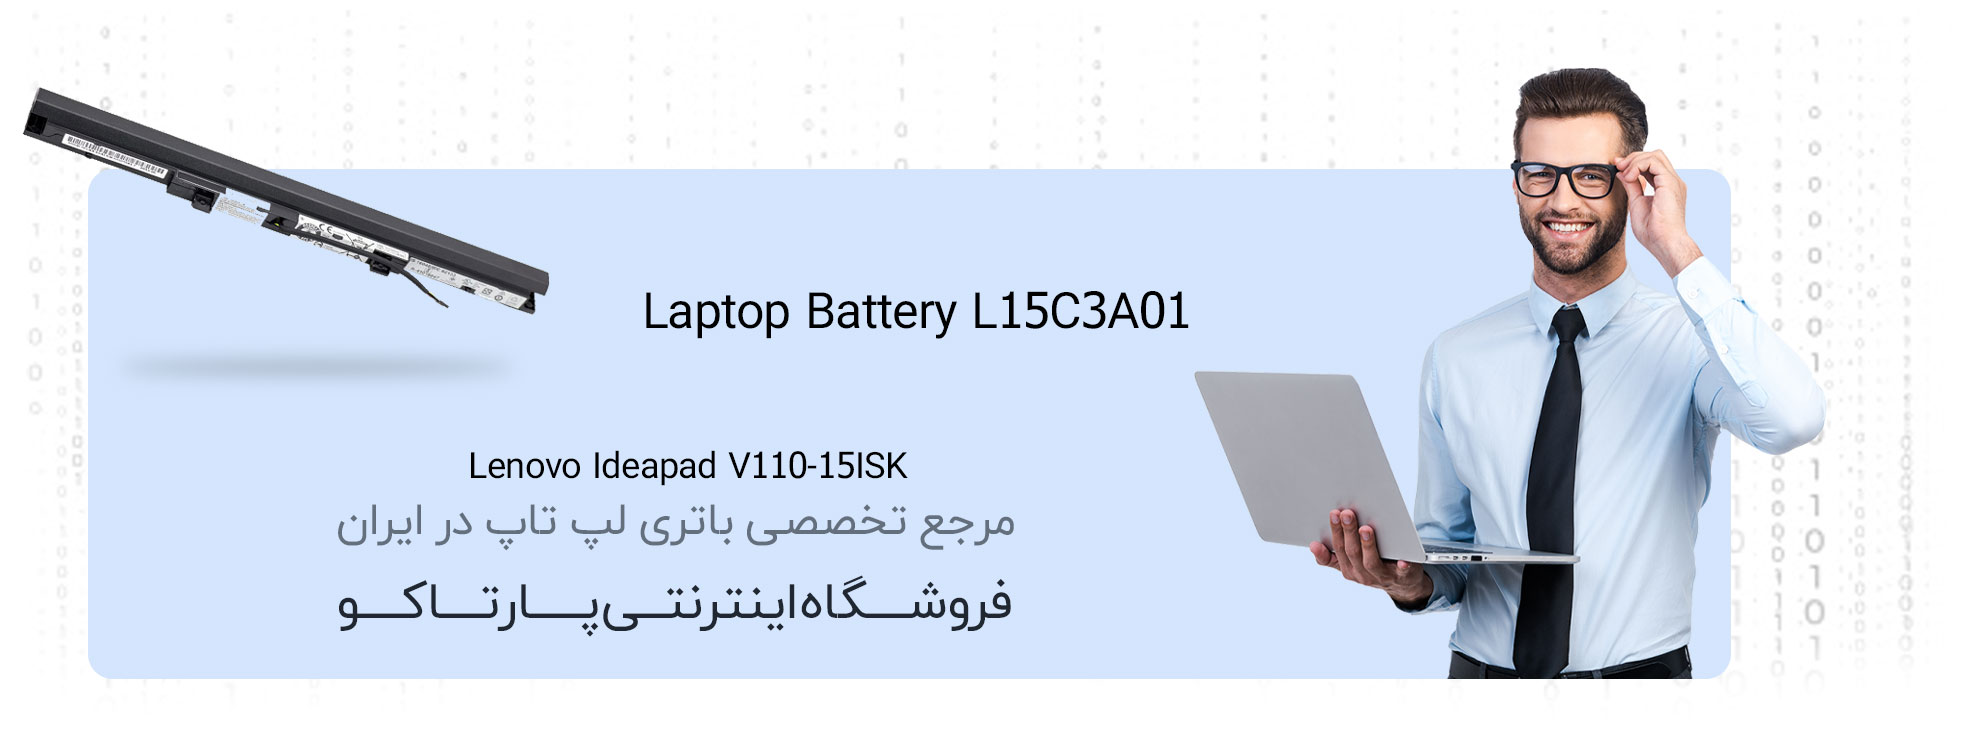 باتری لپ تاپ لنوو ideapd v110-15isk